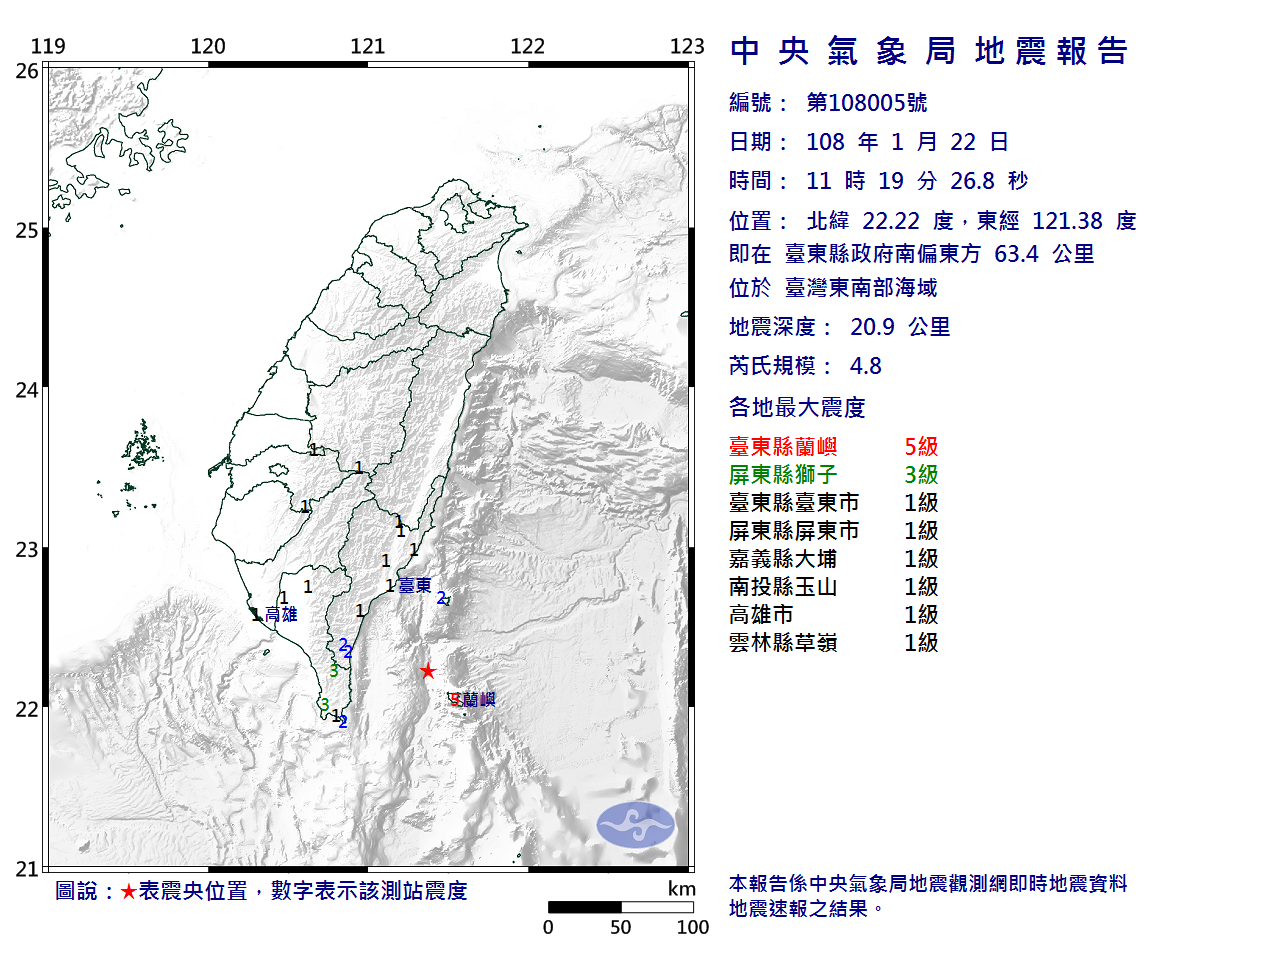 東南部海域規模4.8地震  台東震度5級